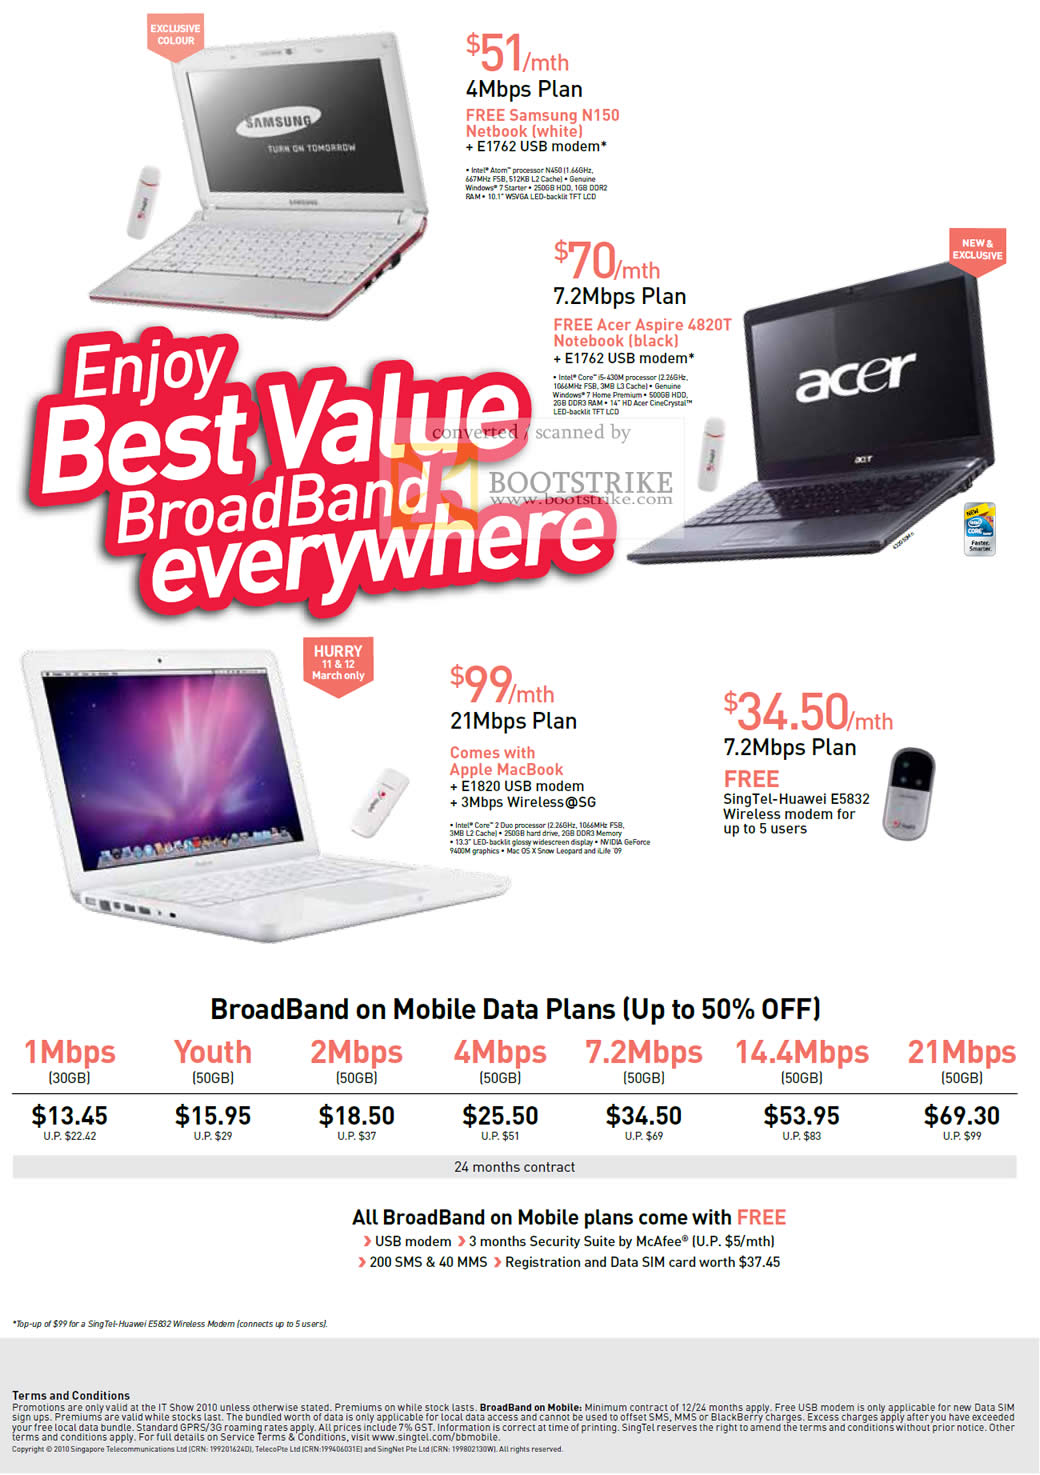 IT Show 2010 price list image brochure of Singtel Samsung N150 Netbook Acer Aspire 4820T Apple Macbook Broadband On Mobile